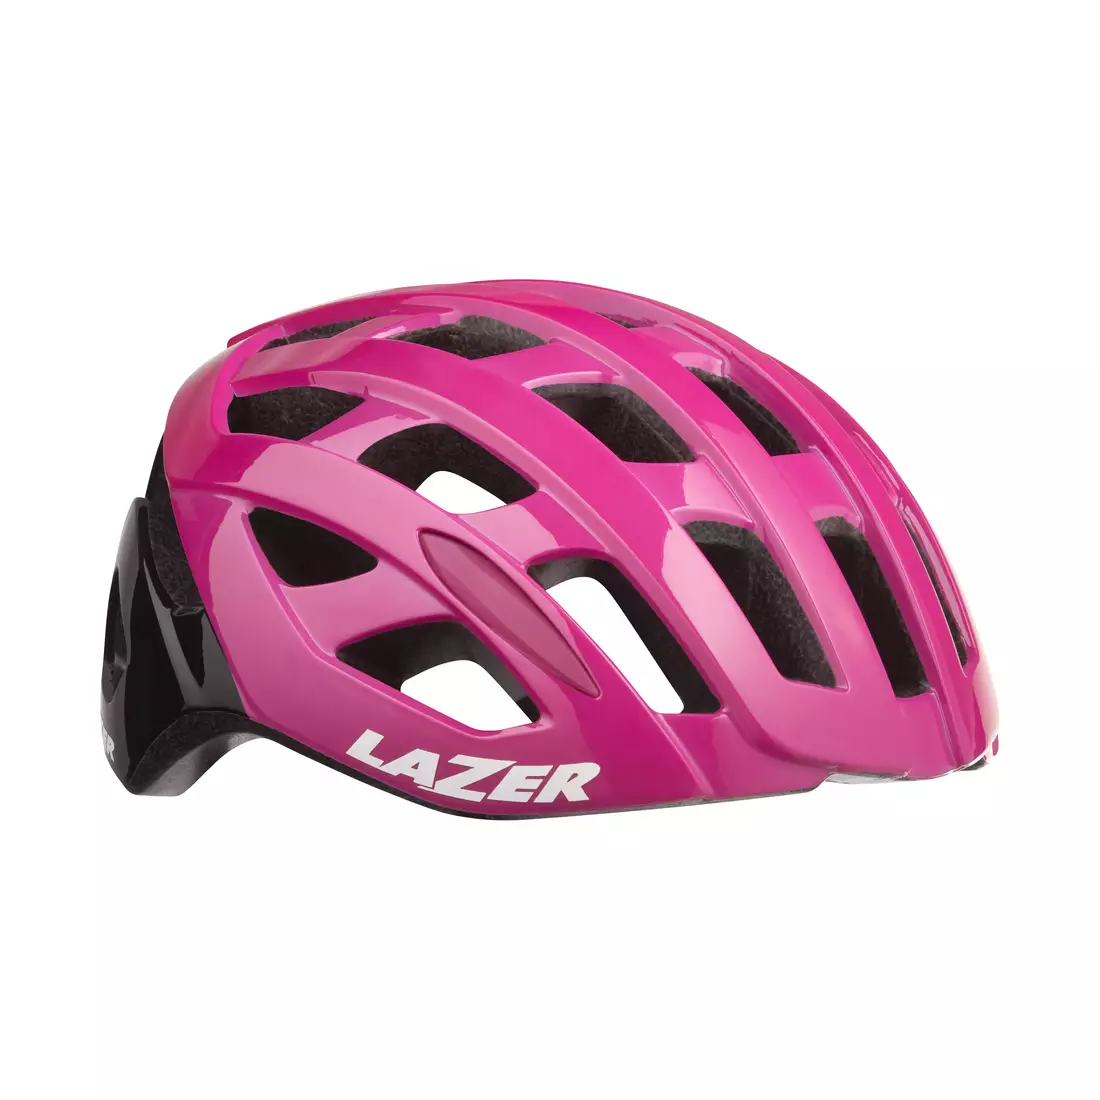 Cestná cyklistická prilba LAZER TONIC TS+, ružový lesk